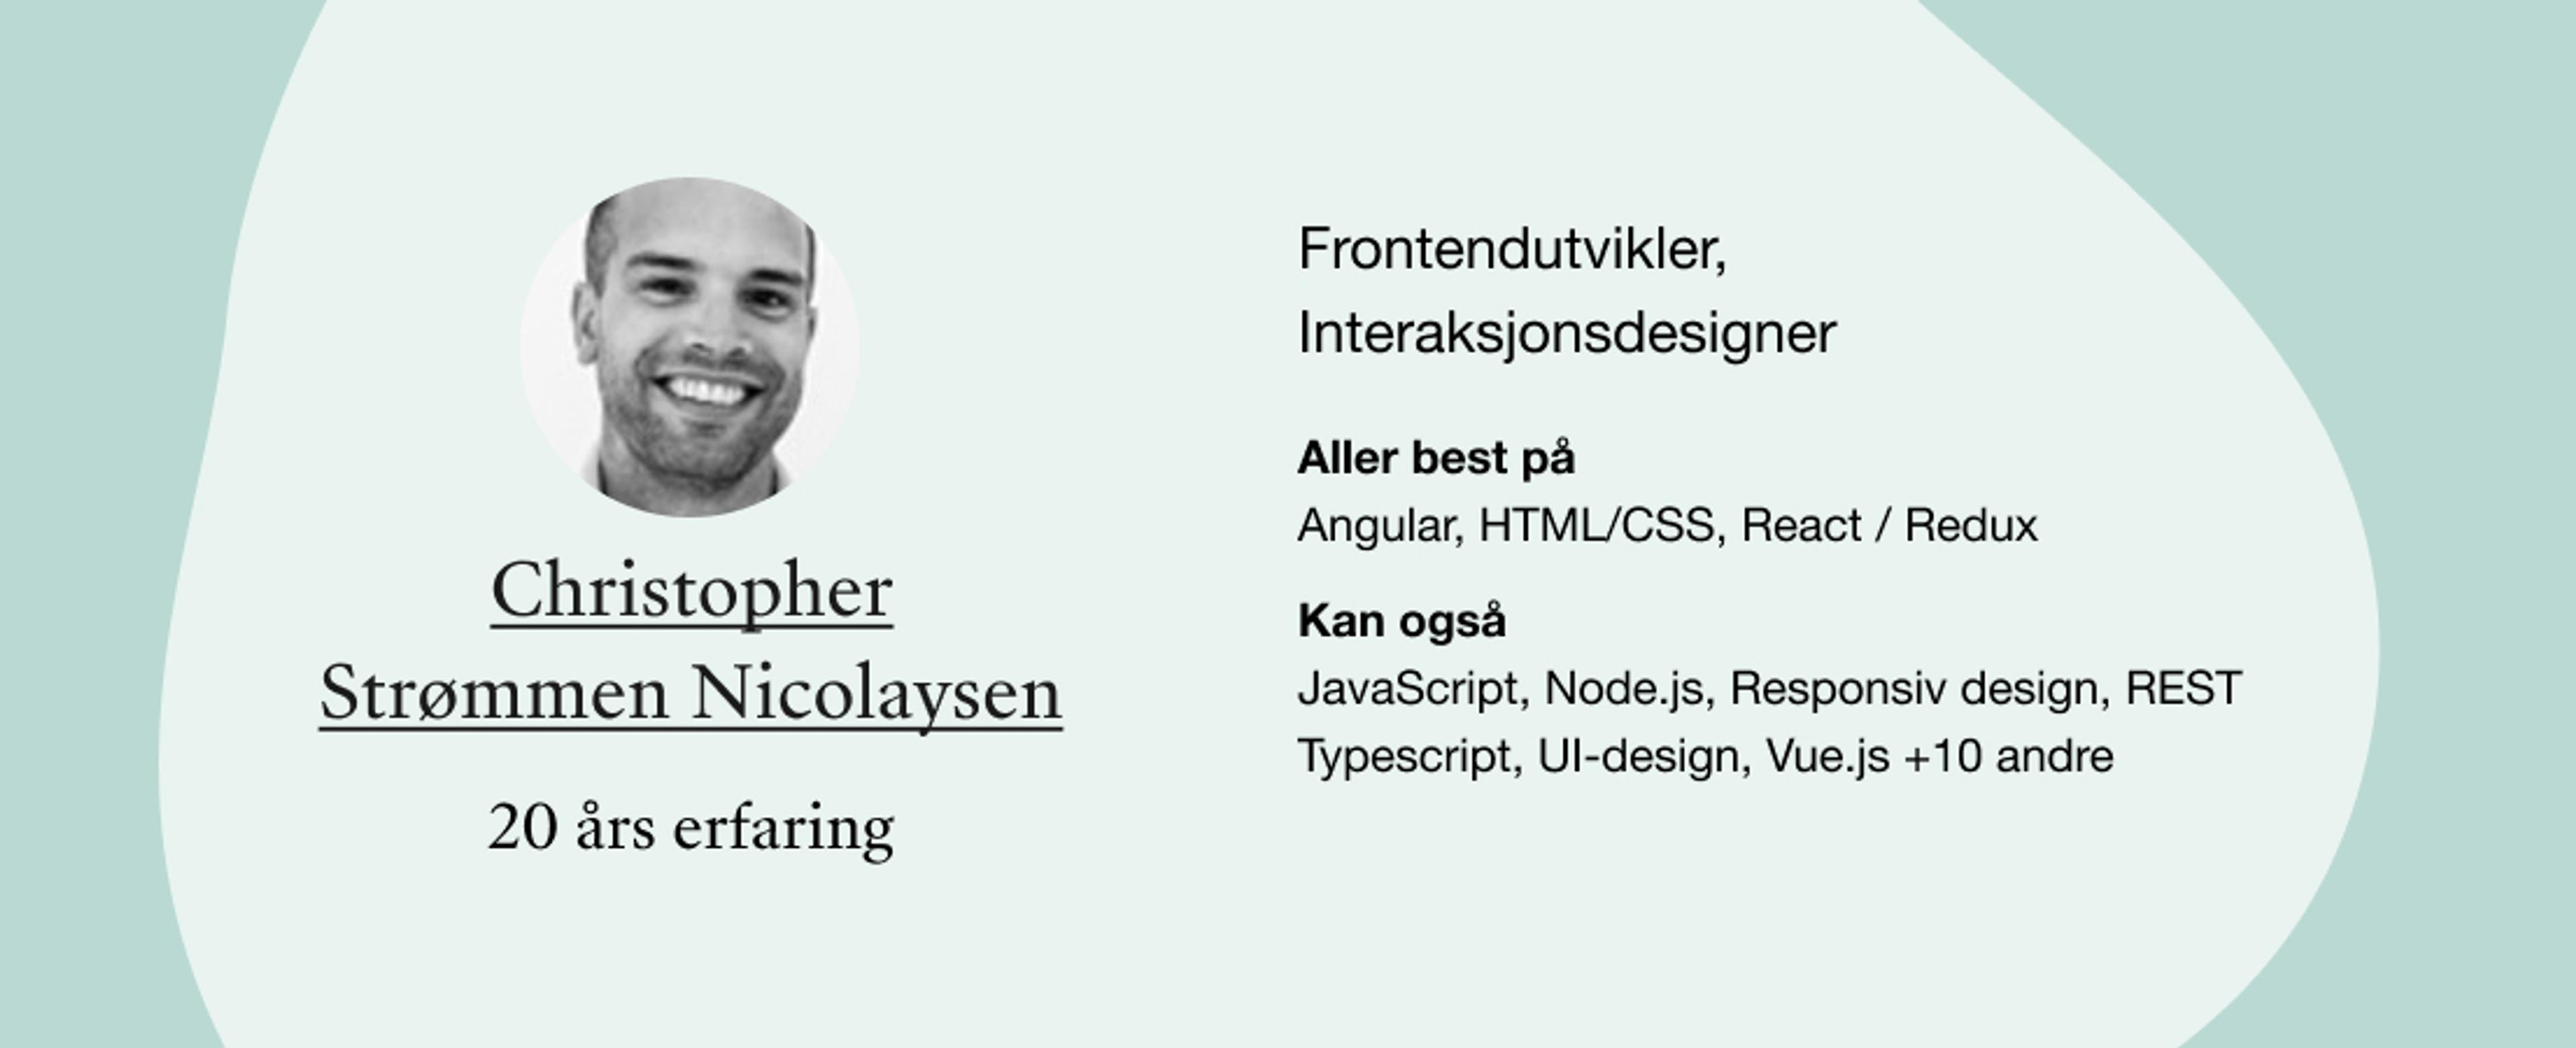 Christopher Strømmen Nicolaysen: roller: Frontendutvikler, Interaksjonsdesigner. Kompetanser: Angular, HTML/CSS, React / Redux, JavaScript, Node.js, Responsiv design, REST Typescript, UI-design, Vue.js +10 andre